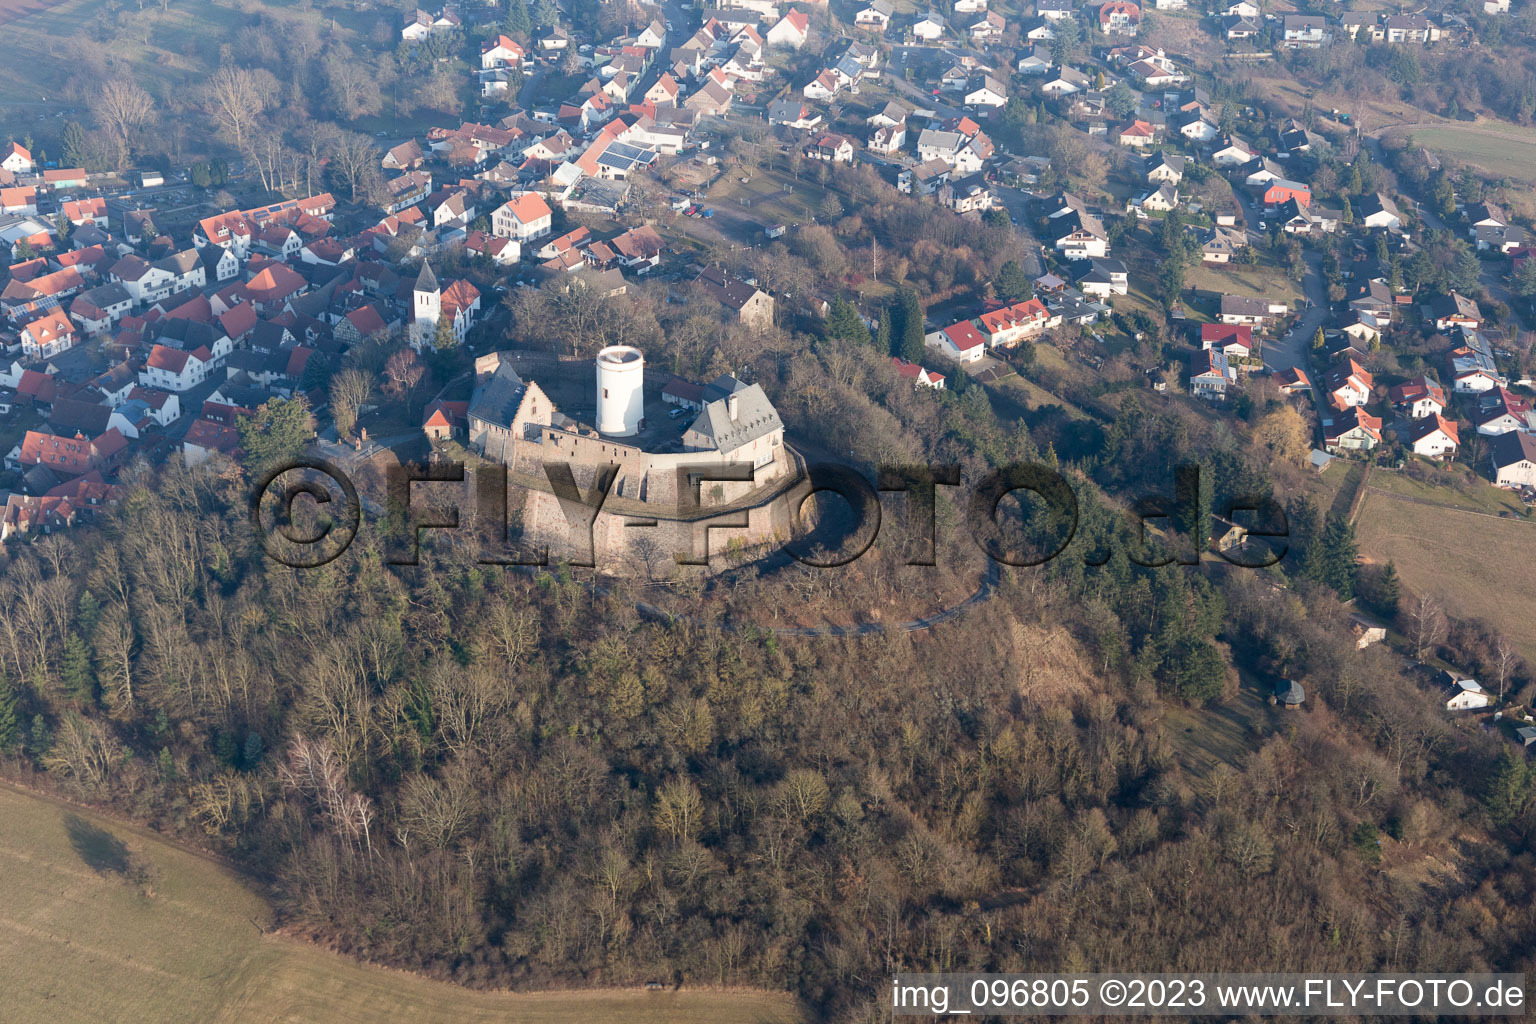 Luftbild von Hering im Bundesland Hessen, Deutschland